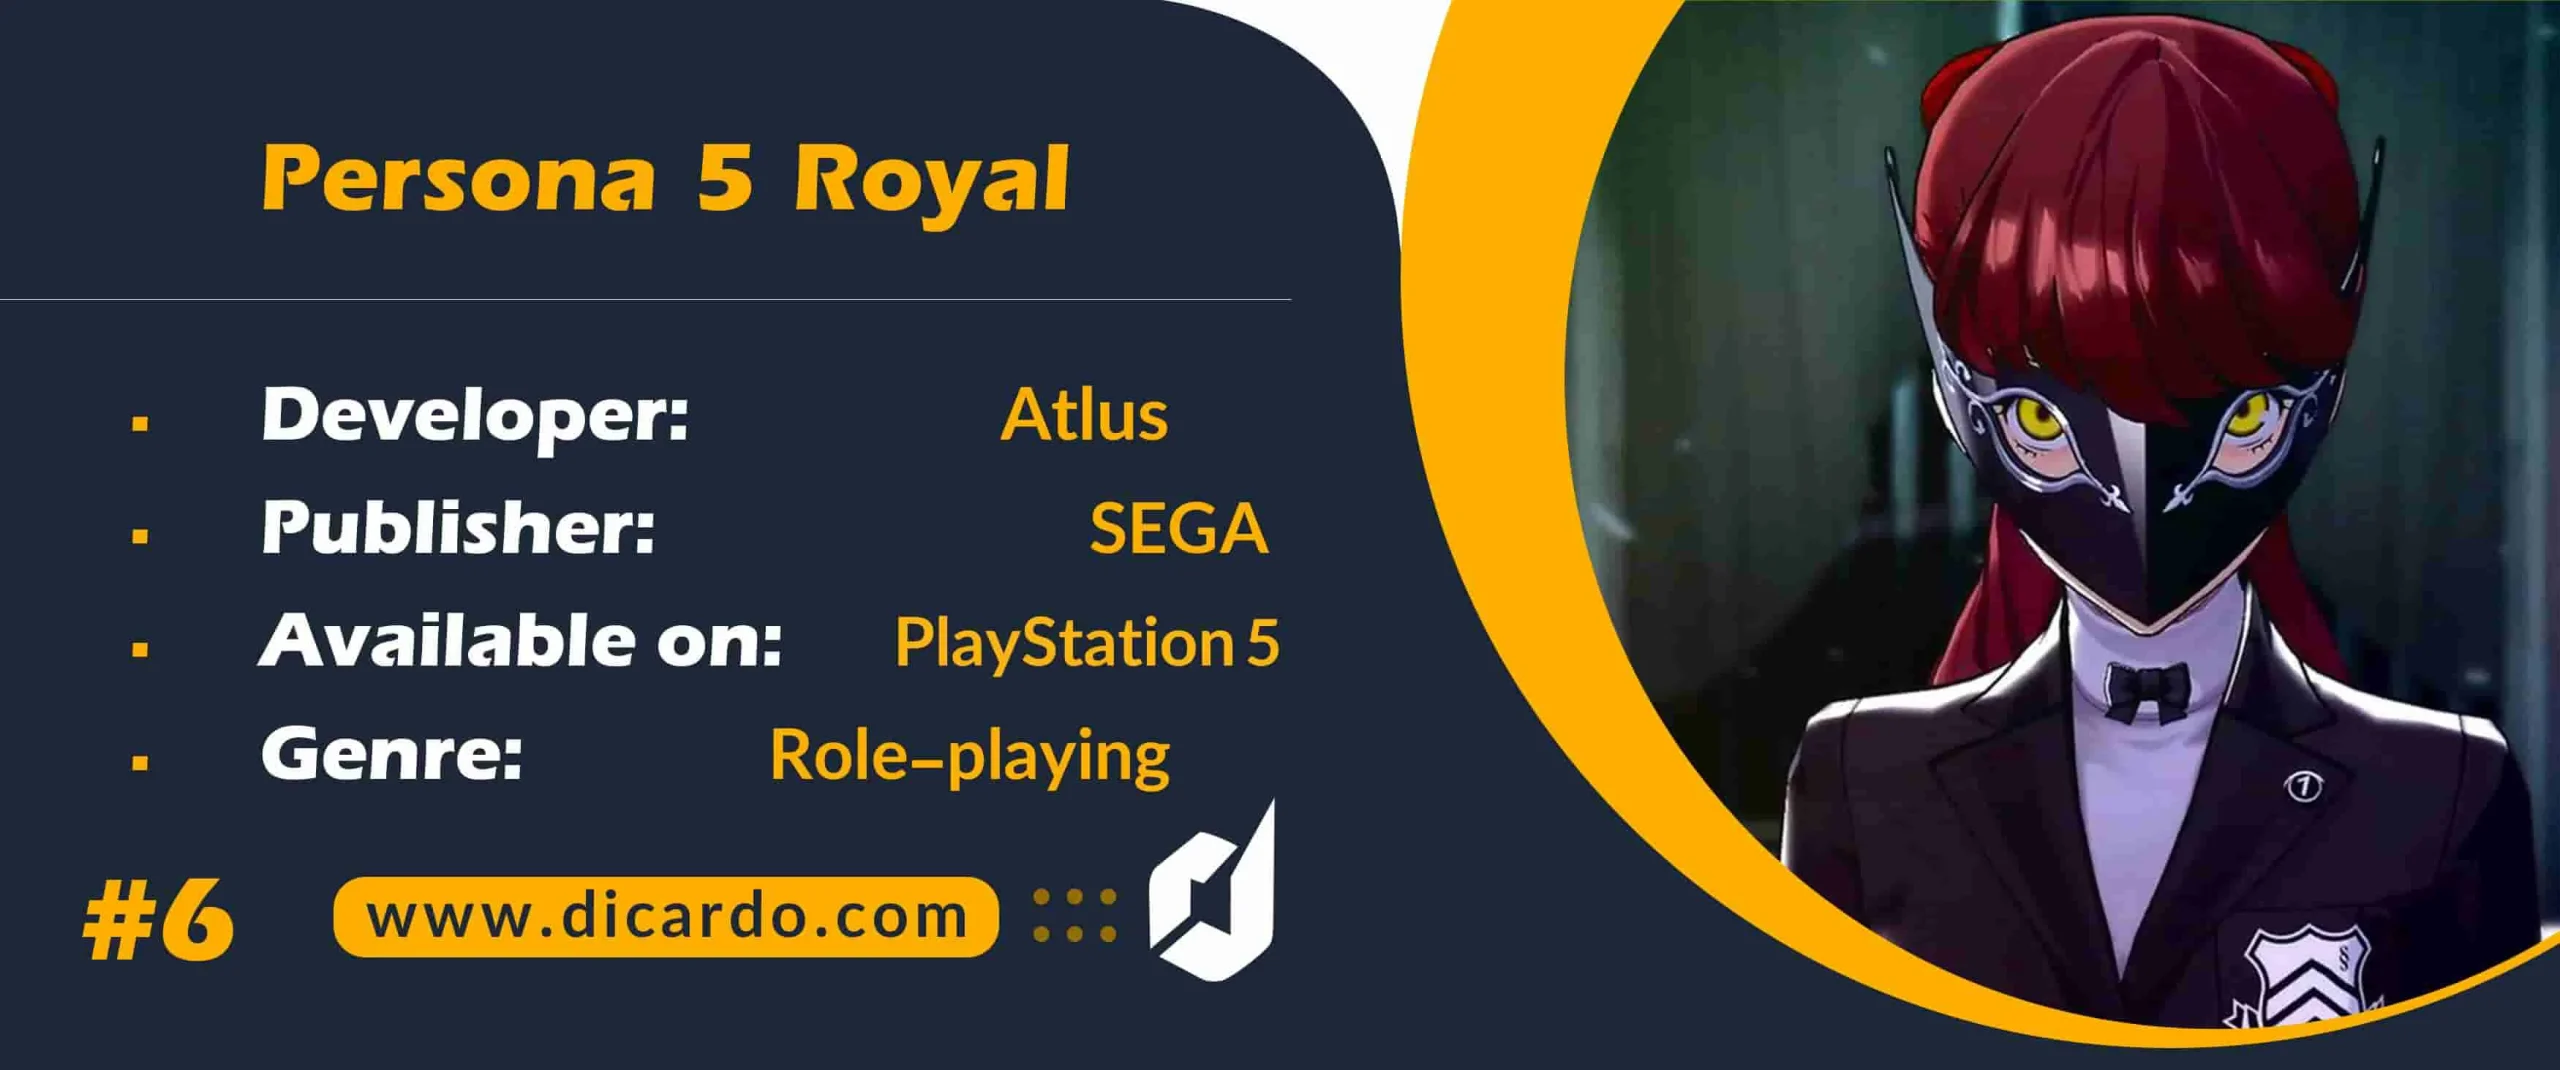 #6 پرسونا 5 رویال Persona 5 Royal از بهترین بازیهای PS5 در ژانر نقش آفرینی